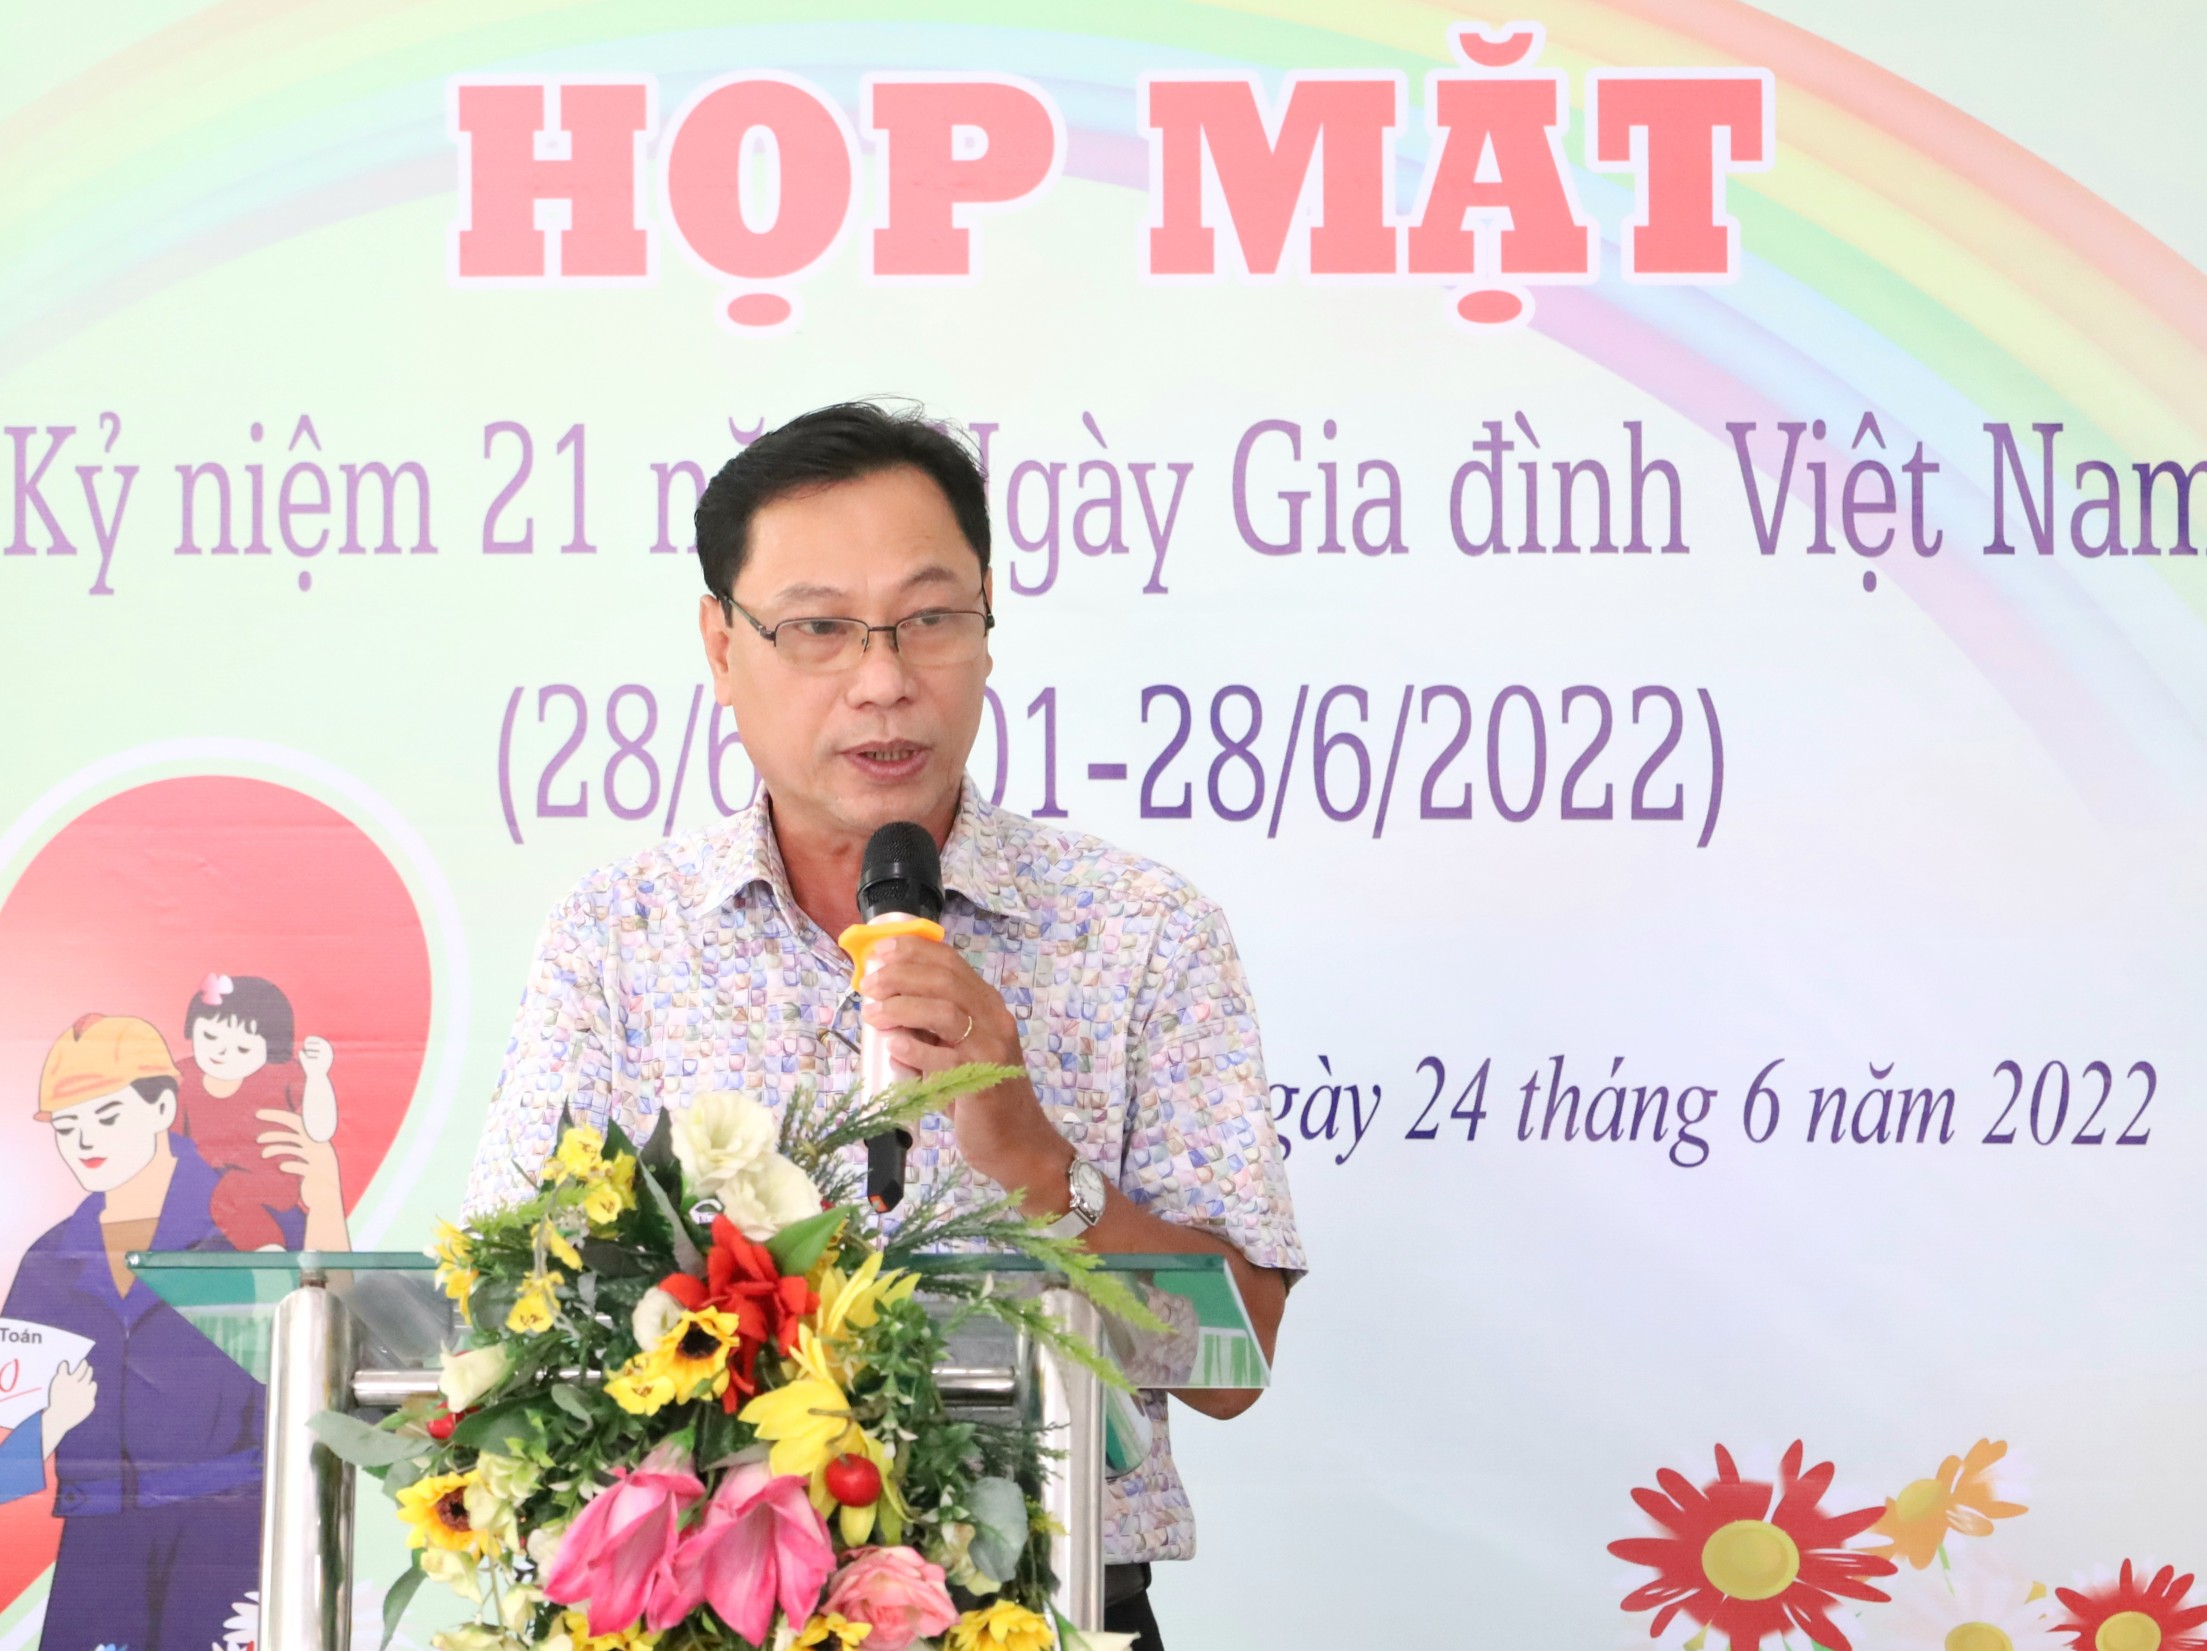 Ông Trần Quốc Thành - Trưởng phòng Văn hóa và Thông tin quận Ninh Kiều phát biểu tại buổi họp mặt.